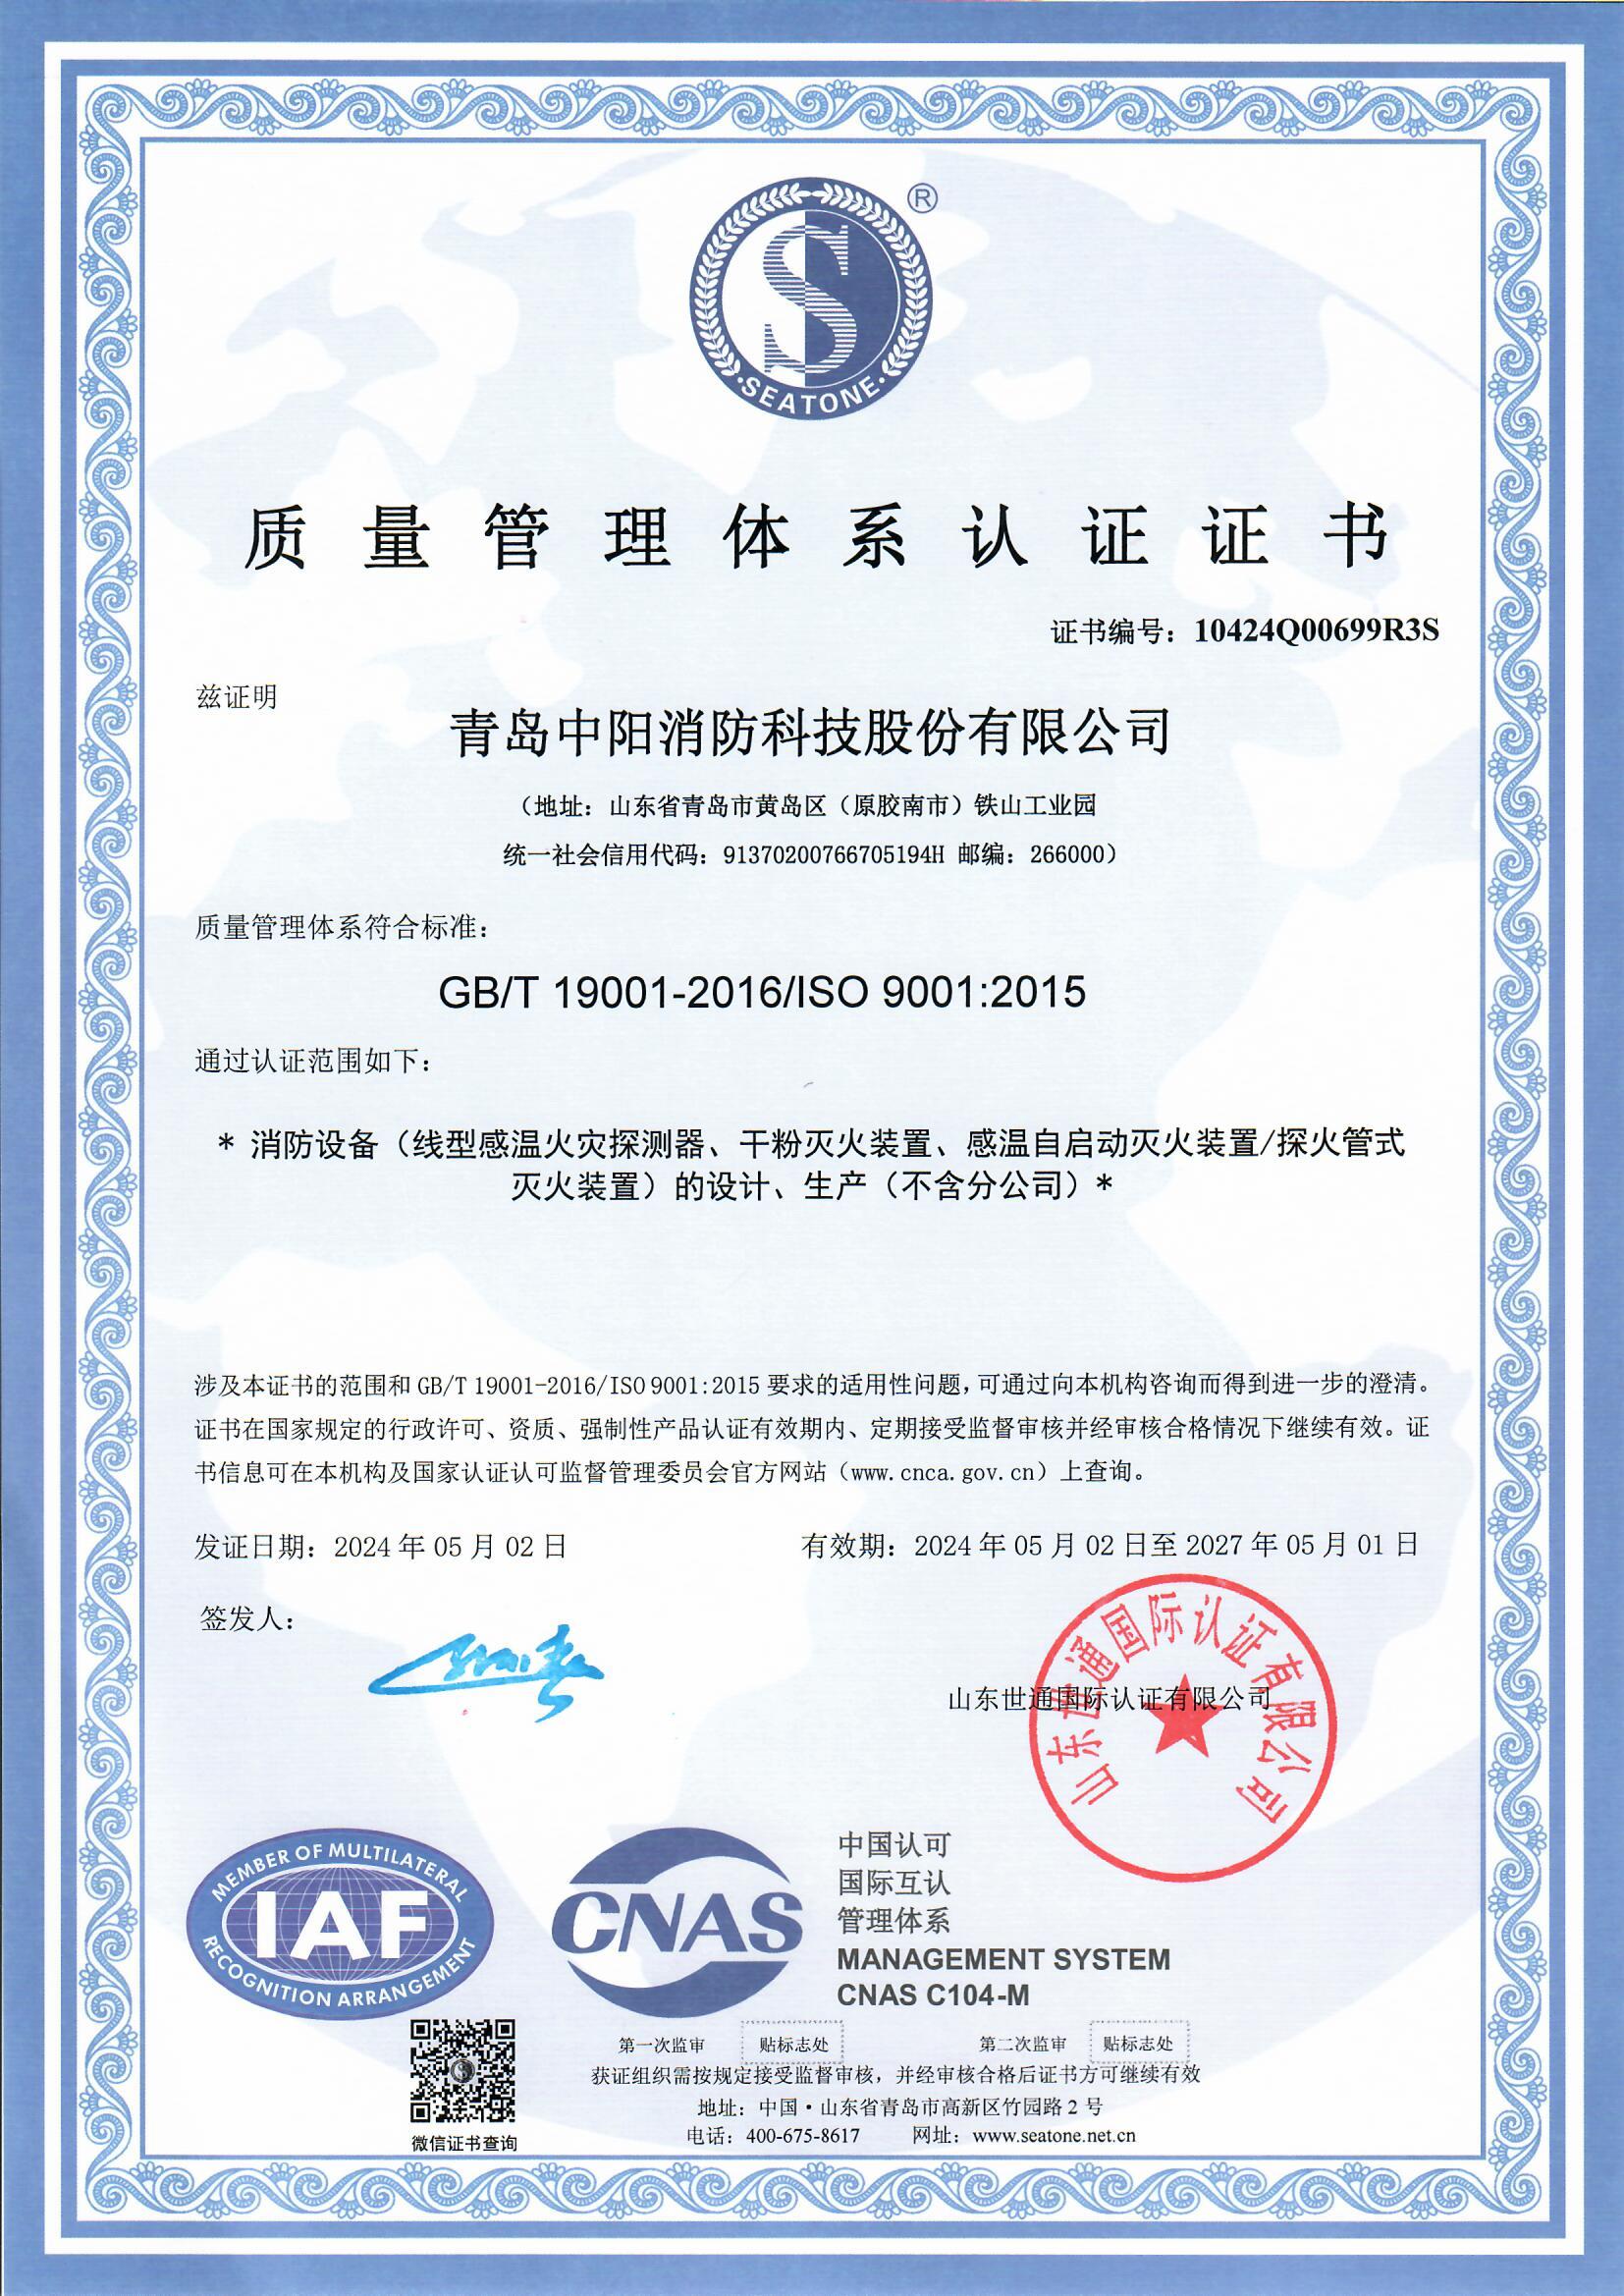 质量管理体系认证证书-中文 (2)